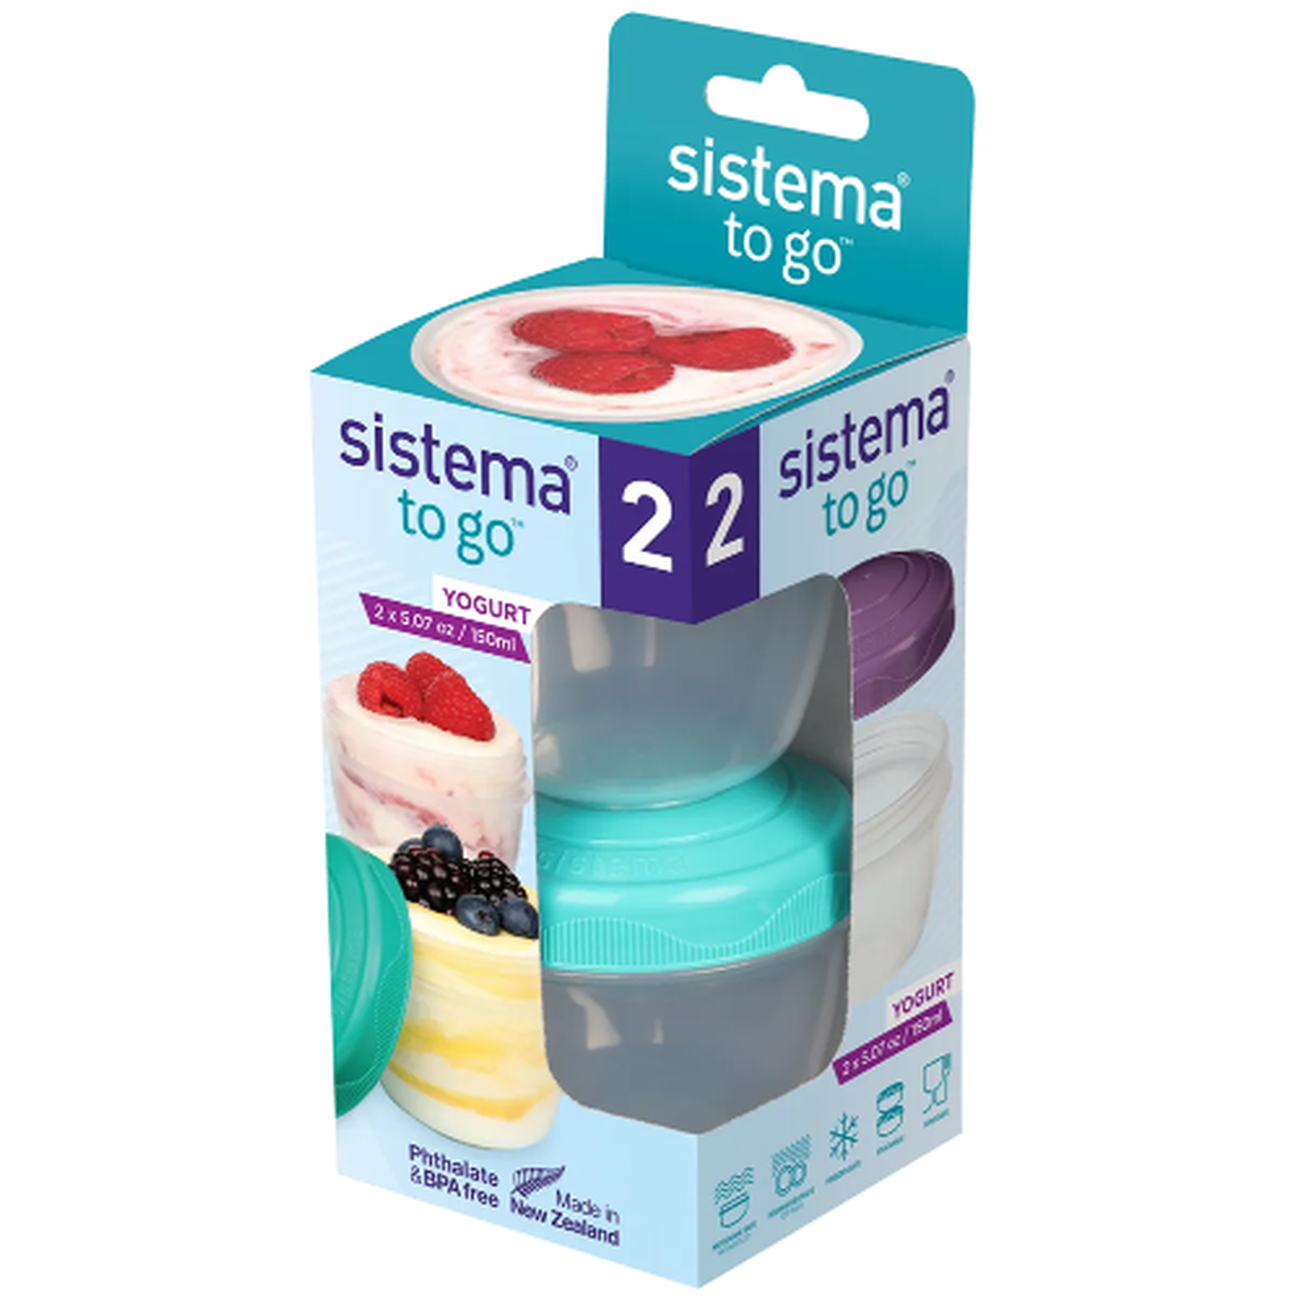 sistema-yogurt-to-go-150ml - Sistema Yogurt To Go 150ml